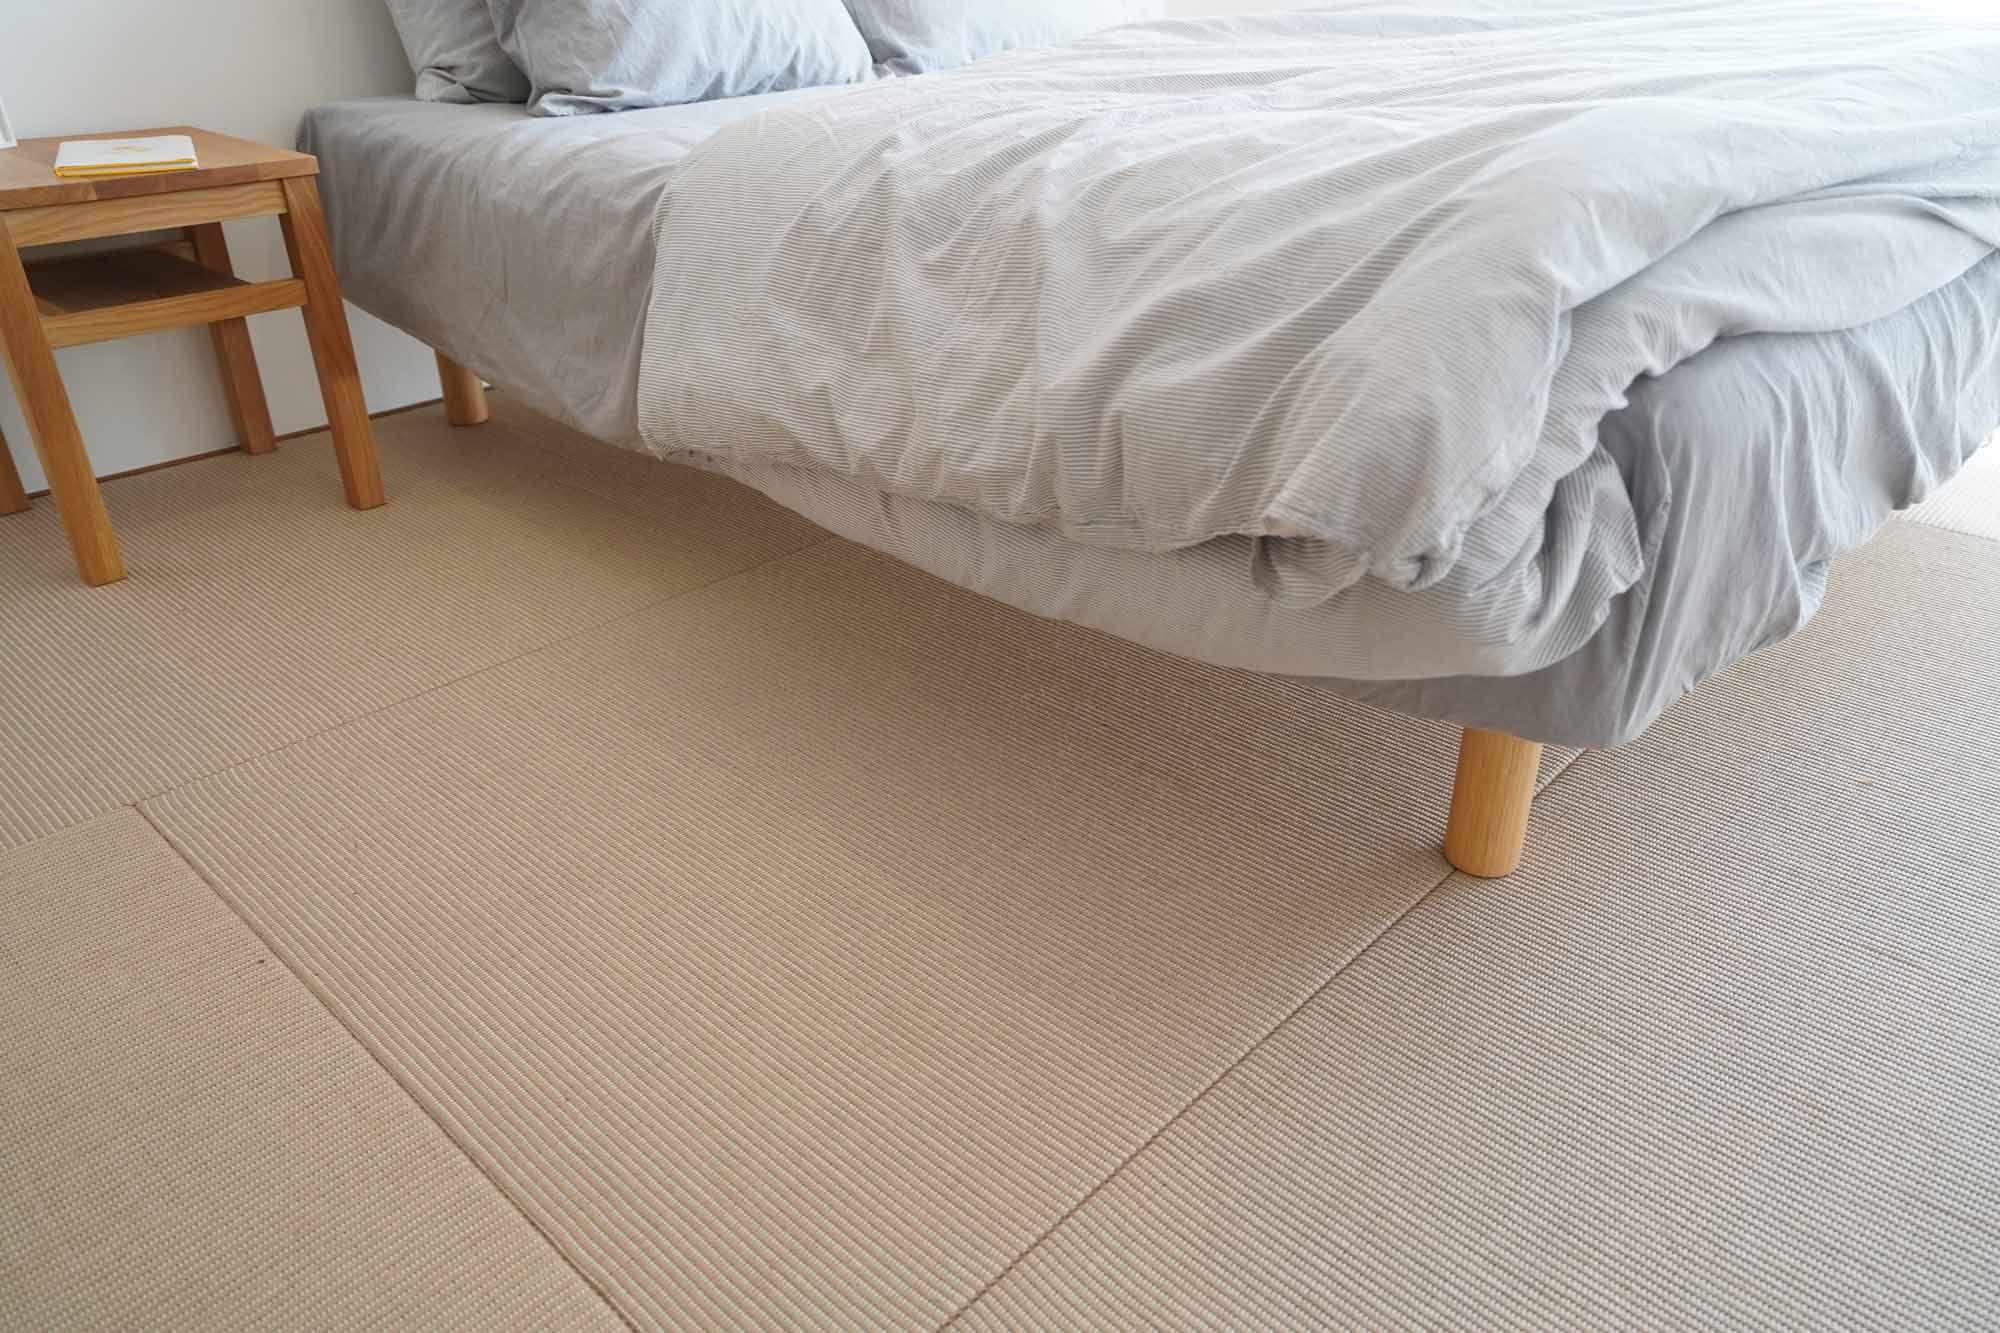 「MUJI×UR」共同開発パーツの麻畳は、しっかりとした硬さがあるので、ベッドなどの家具を置いてもへこみがつきにくく、模様替えもしやすいですよ。